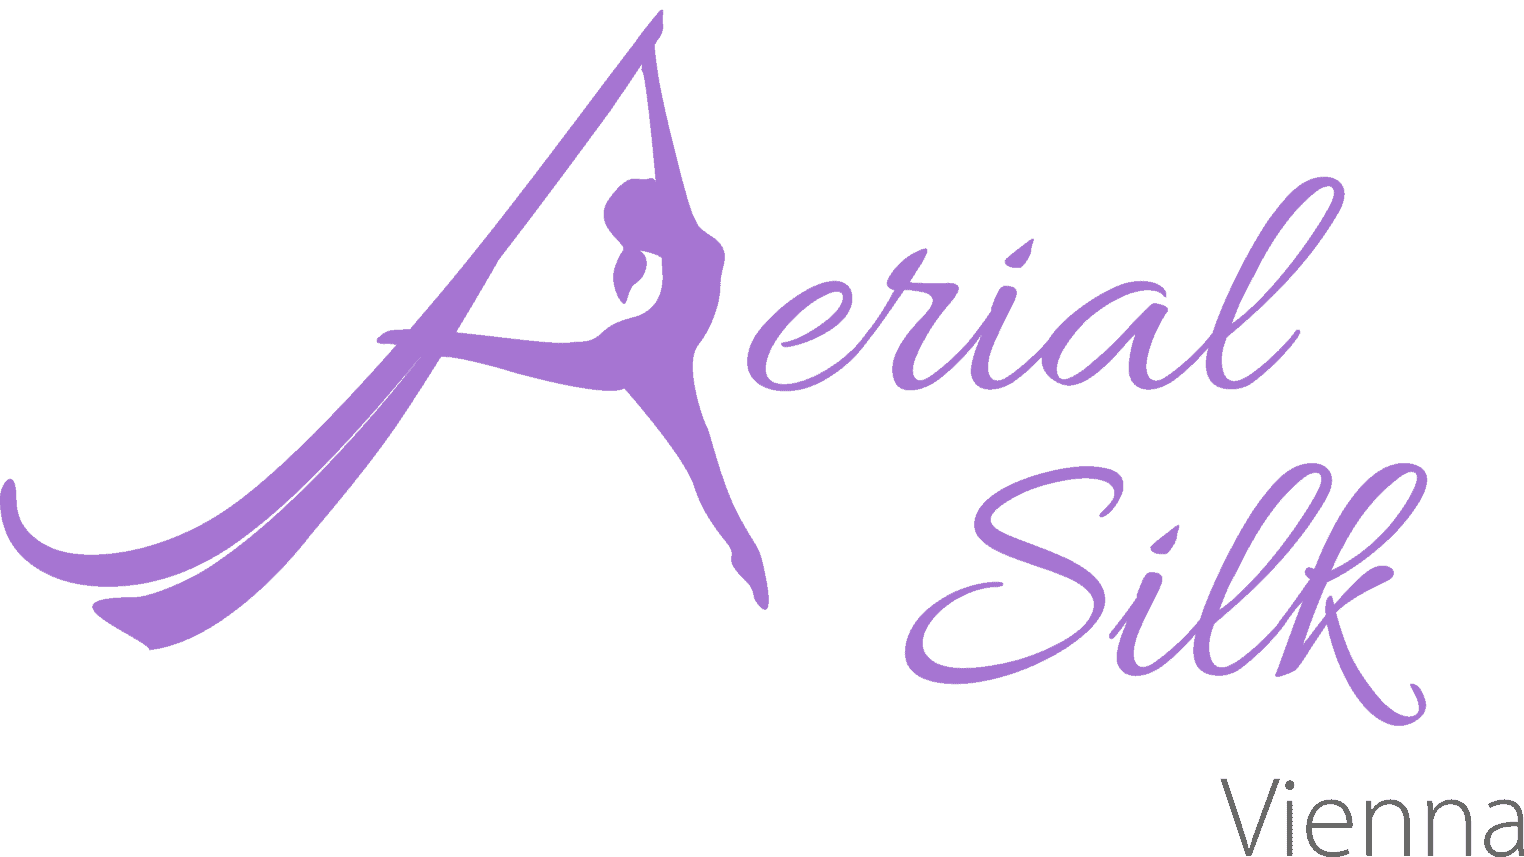 Aerial Silk Vienna Logo